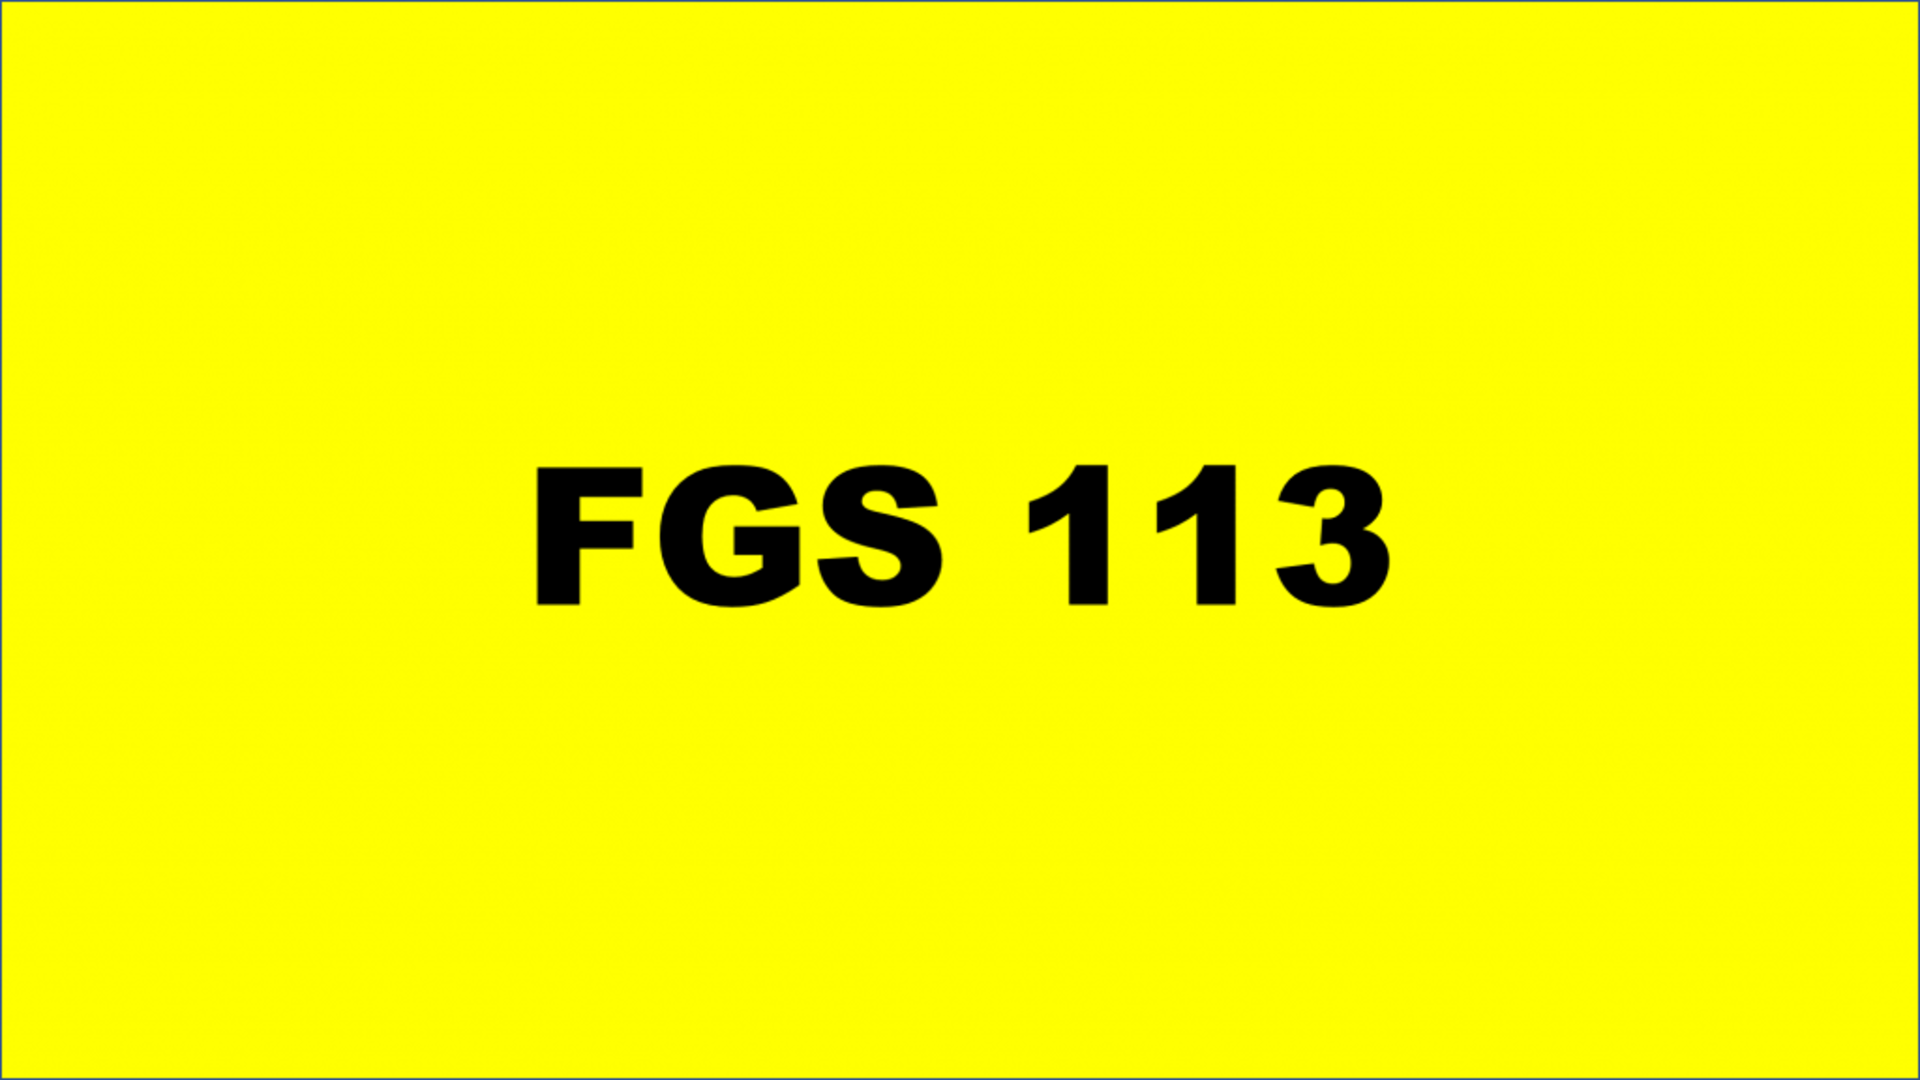 REGISTRATION - FGS 113